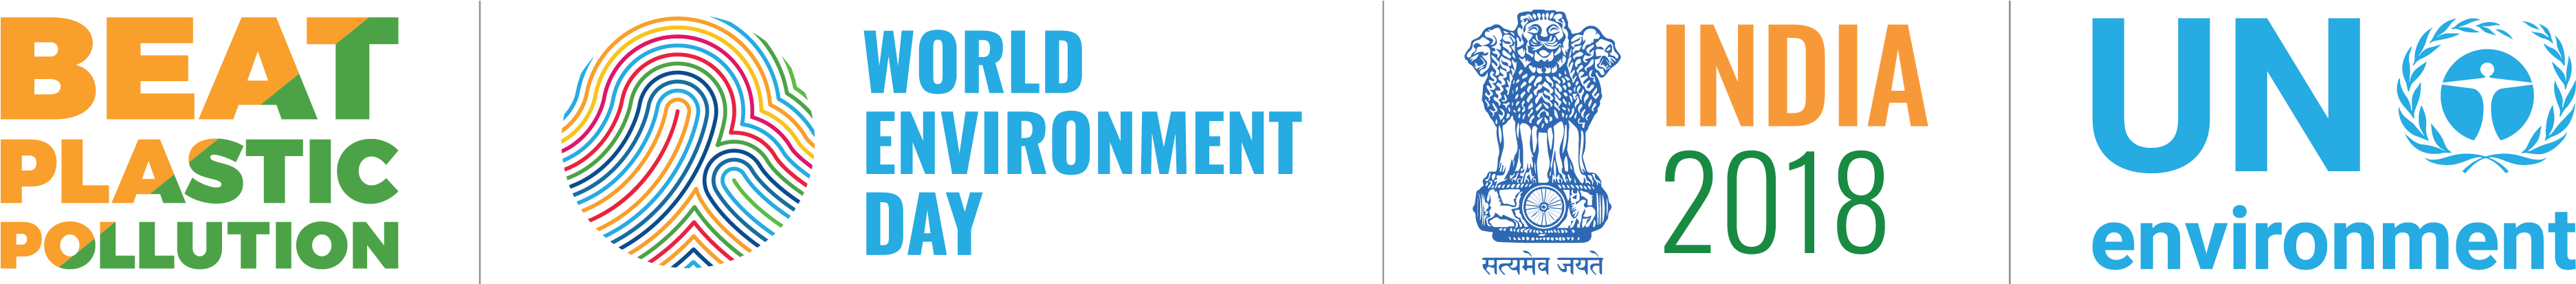 World Environment Day - World Environment Day Logo (4196x728)